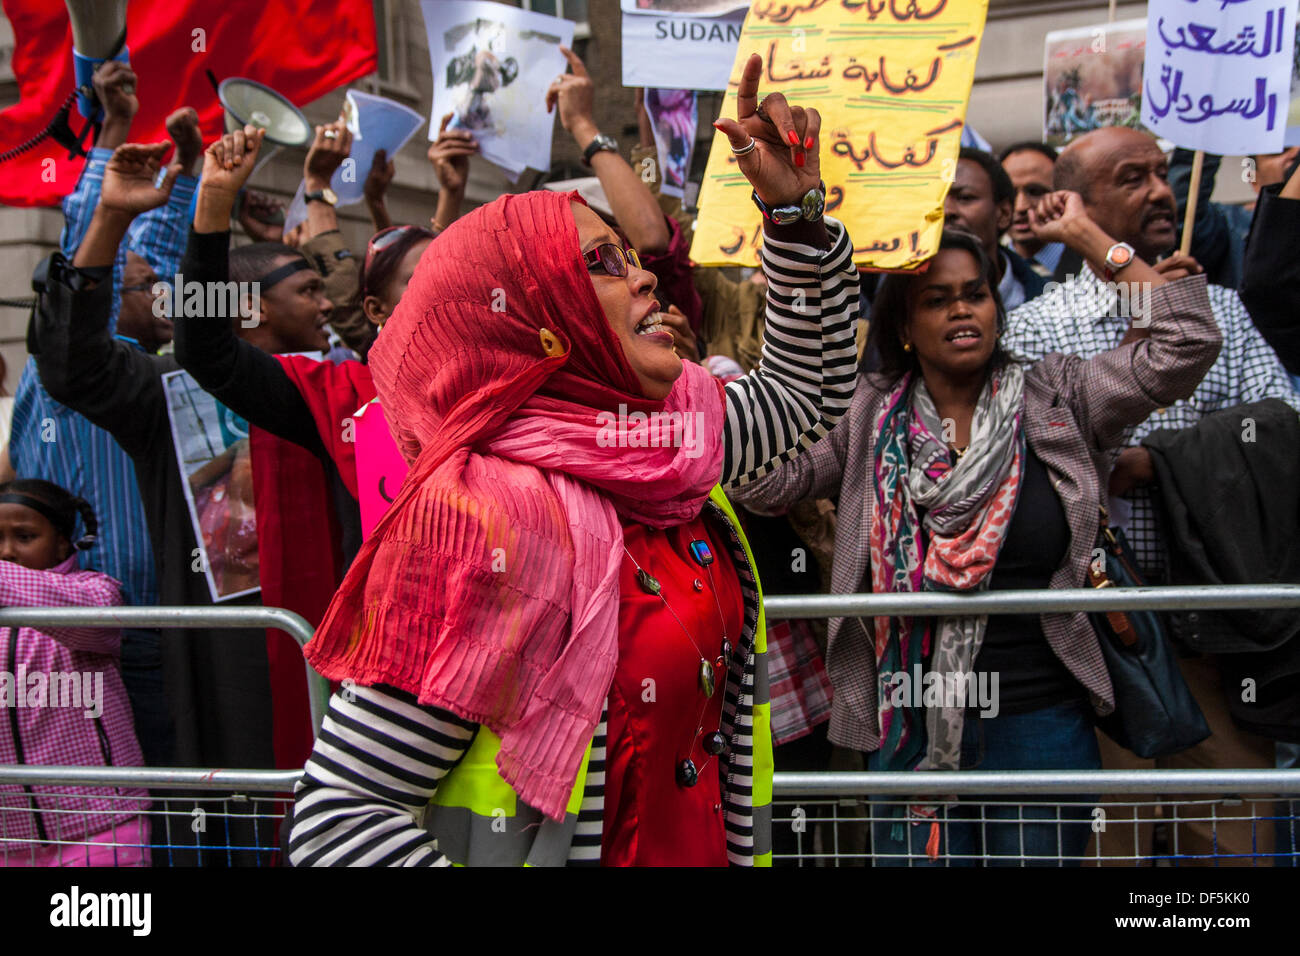 London, UK. 28. September 2013. Eine Frau führt regierungsfeindlichen singen wie sudanesische Ausländer gegen die Freilassung von politischen Gefangenen und ein Ende zur Regierungskorruption des Landes-Regime zu demonstrieren. Bildnachweis: Paul Davey/Alamy Live-Nachrichten Stockfoto